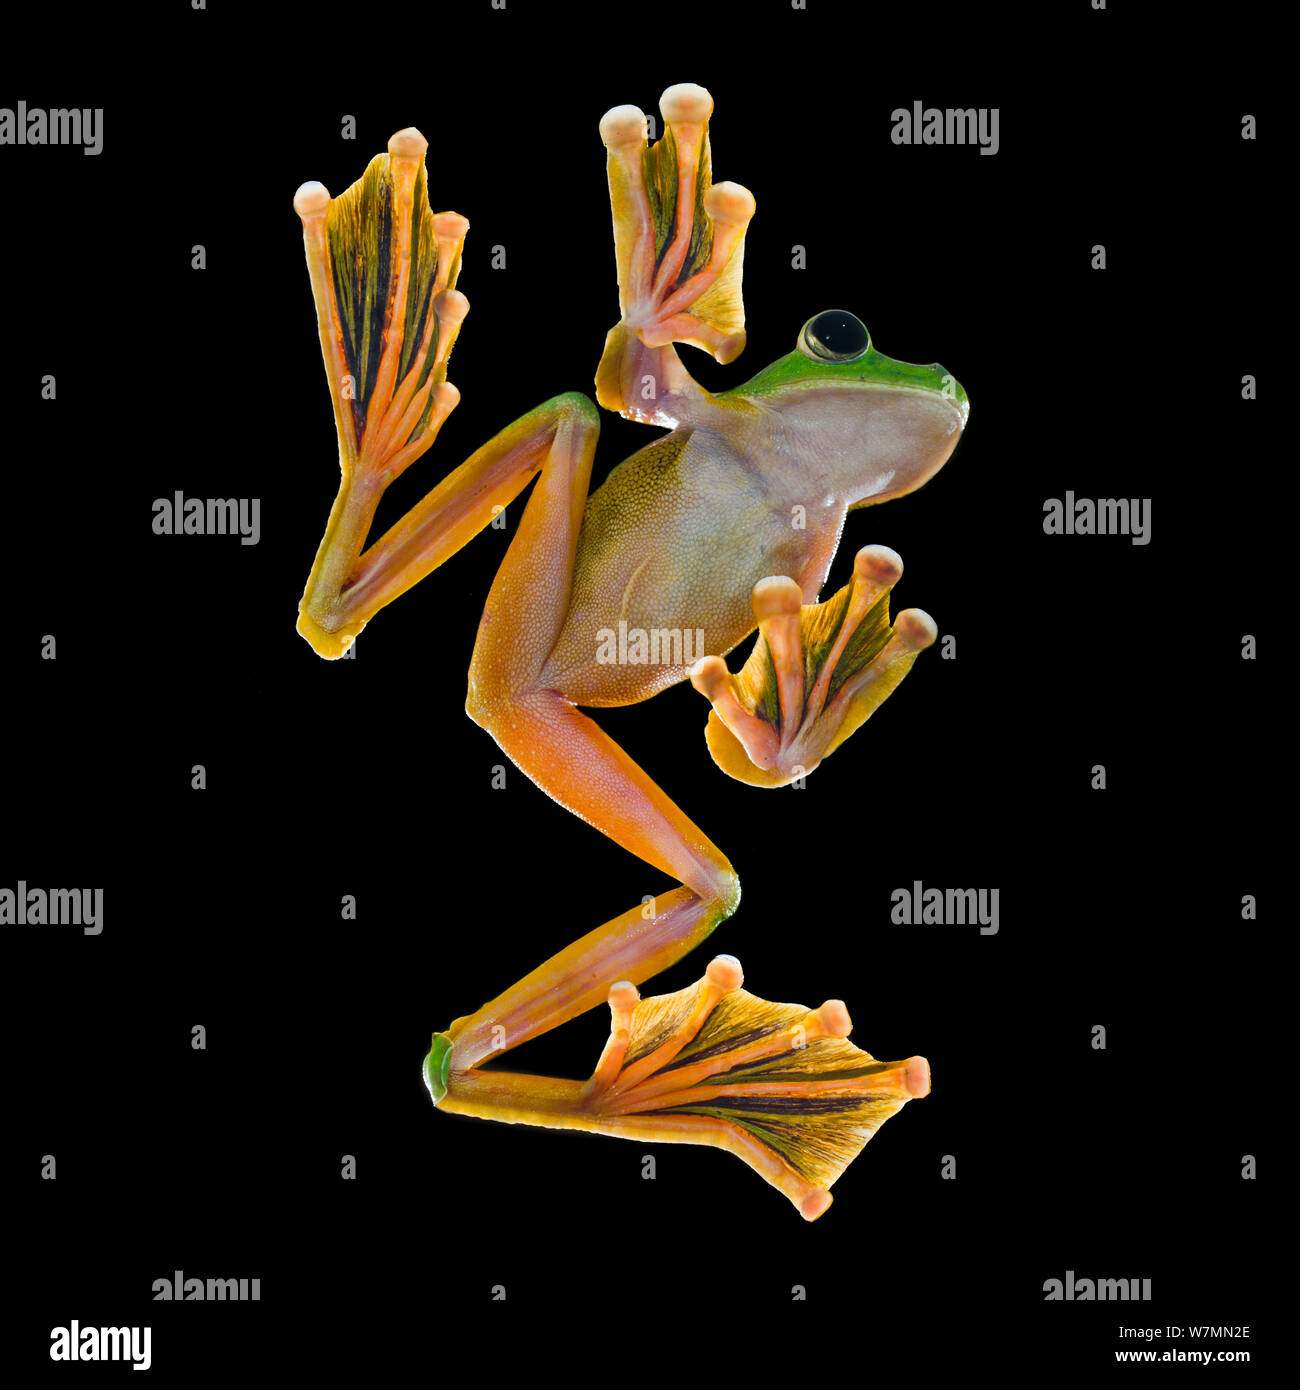 Wallace's Flying frog (Rhacophorus nigropalmatus) homme à partir de la forêt de diptérocarpacées de plaine, Danum Valley, Sabah, Bornéo. Photographiées in situ en studio de fortune dans la forêt. Banque D'Images